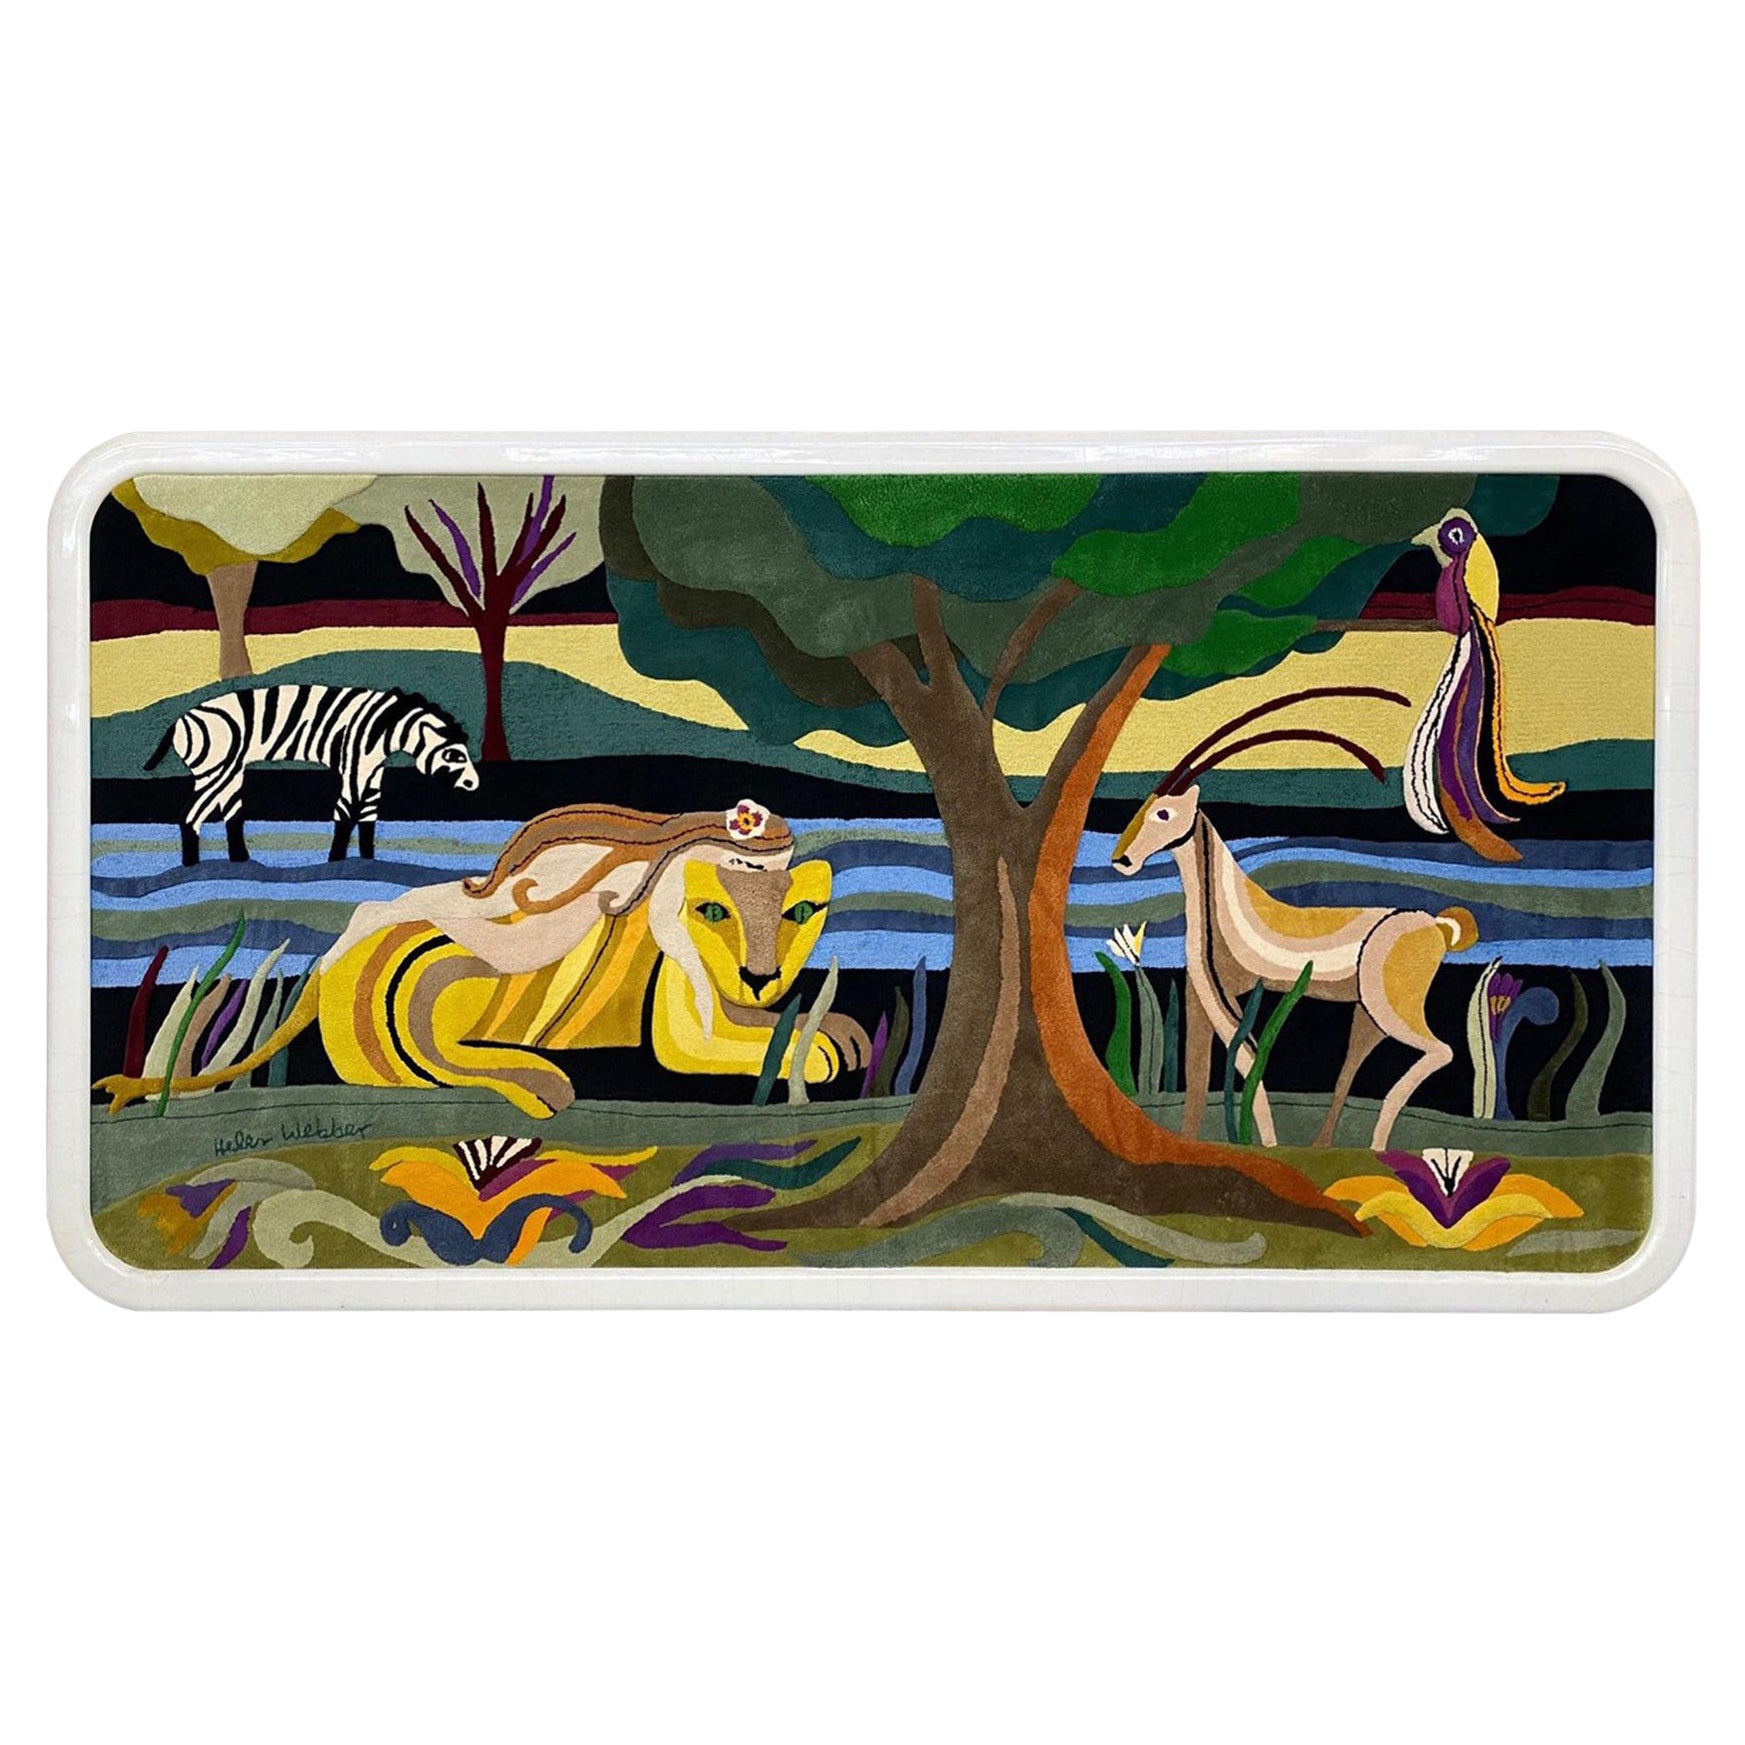 Grande tapisserie monumentale tissée encadrée sur mesure représentant une scène de Jungle, signée Helen Webber